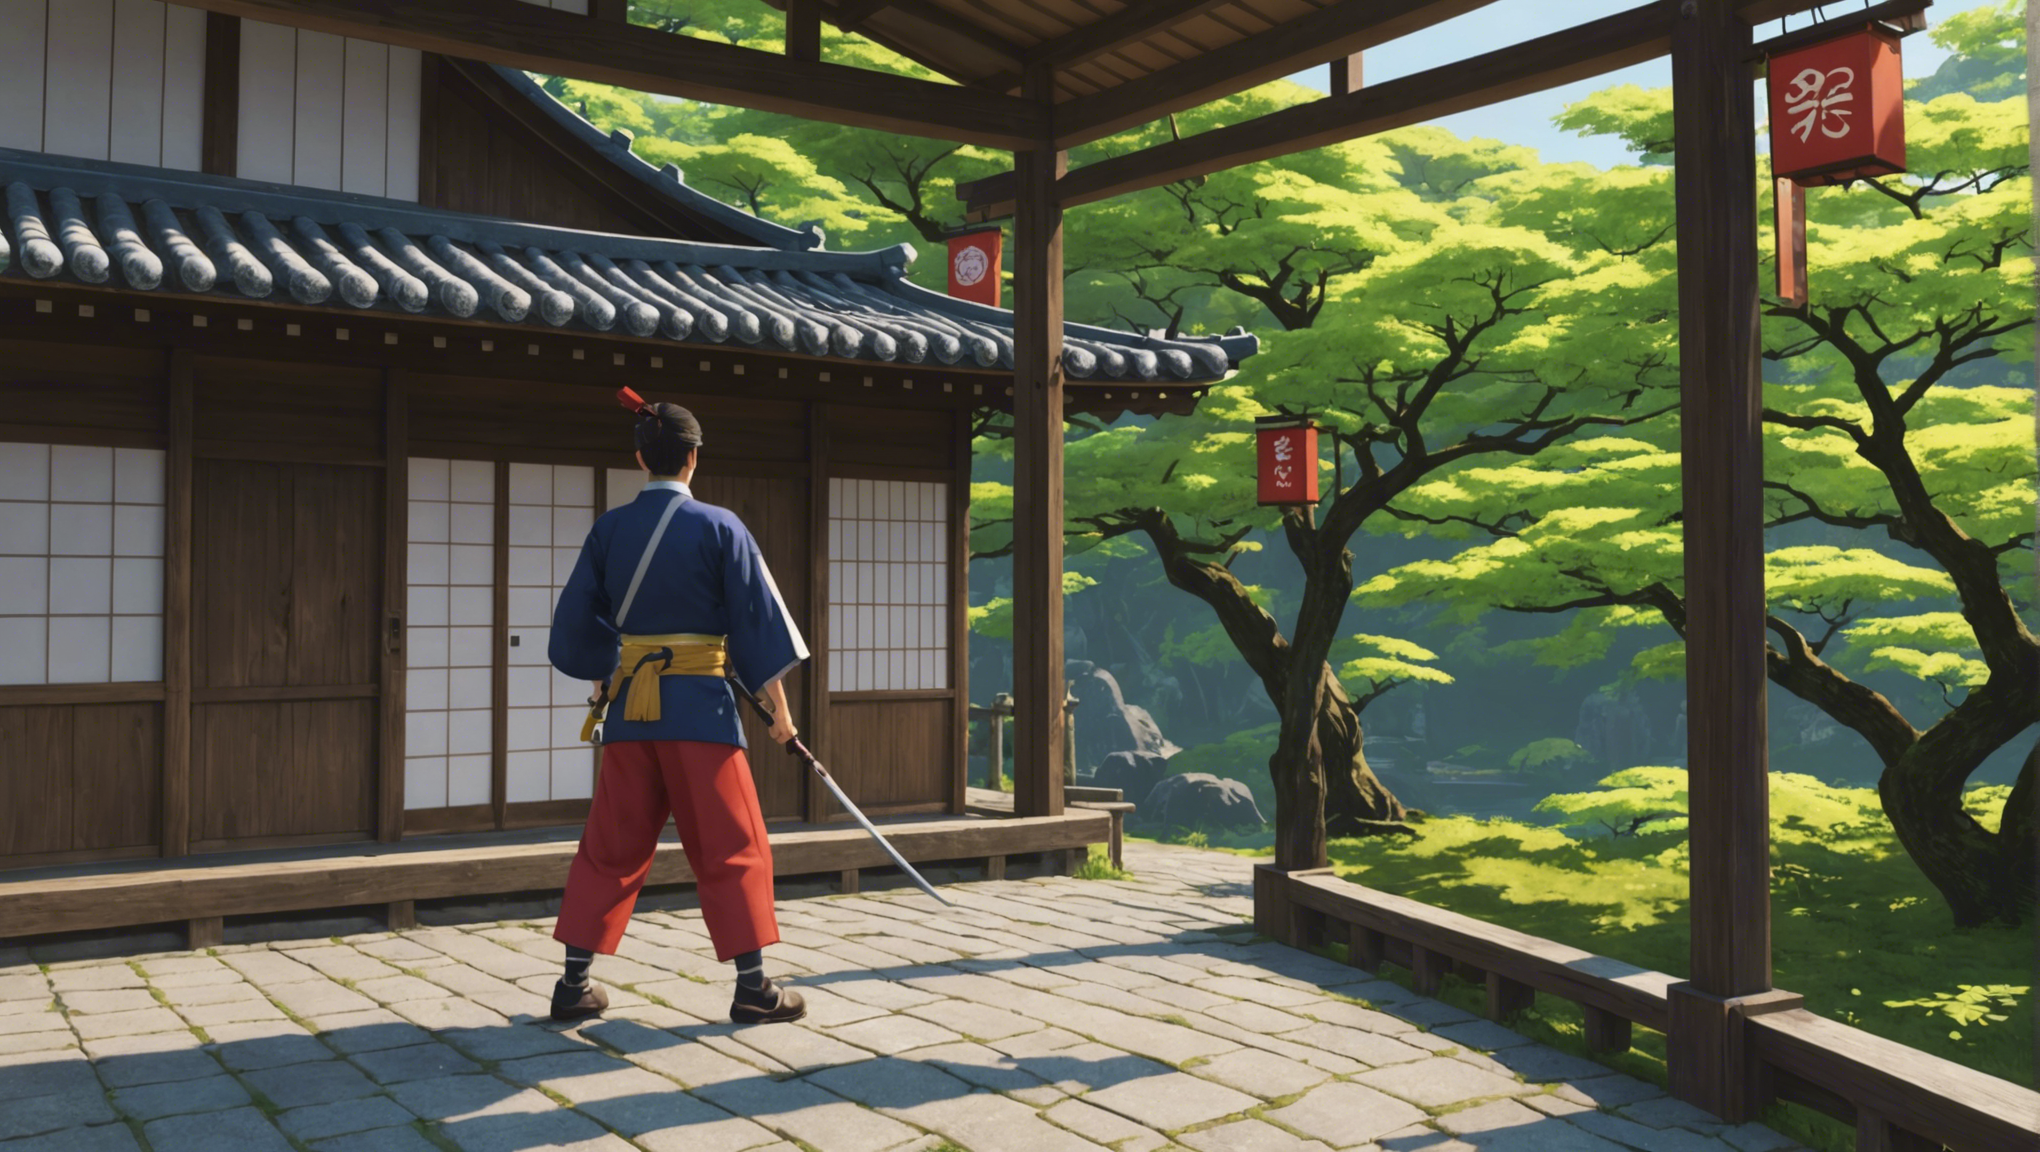 découvrez comment surmonter les enjeux de traduction et d'adaptation culturelle dans les jeux de rôle importés du japon.